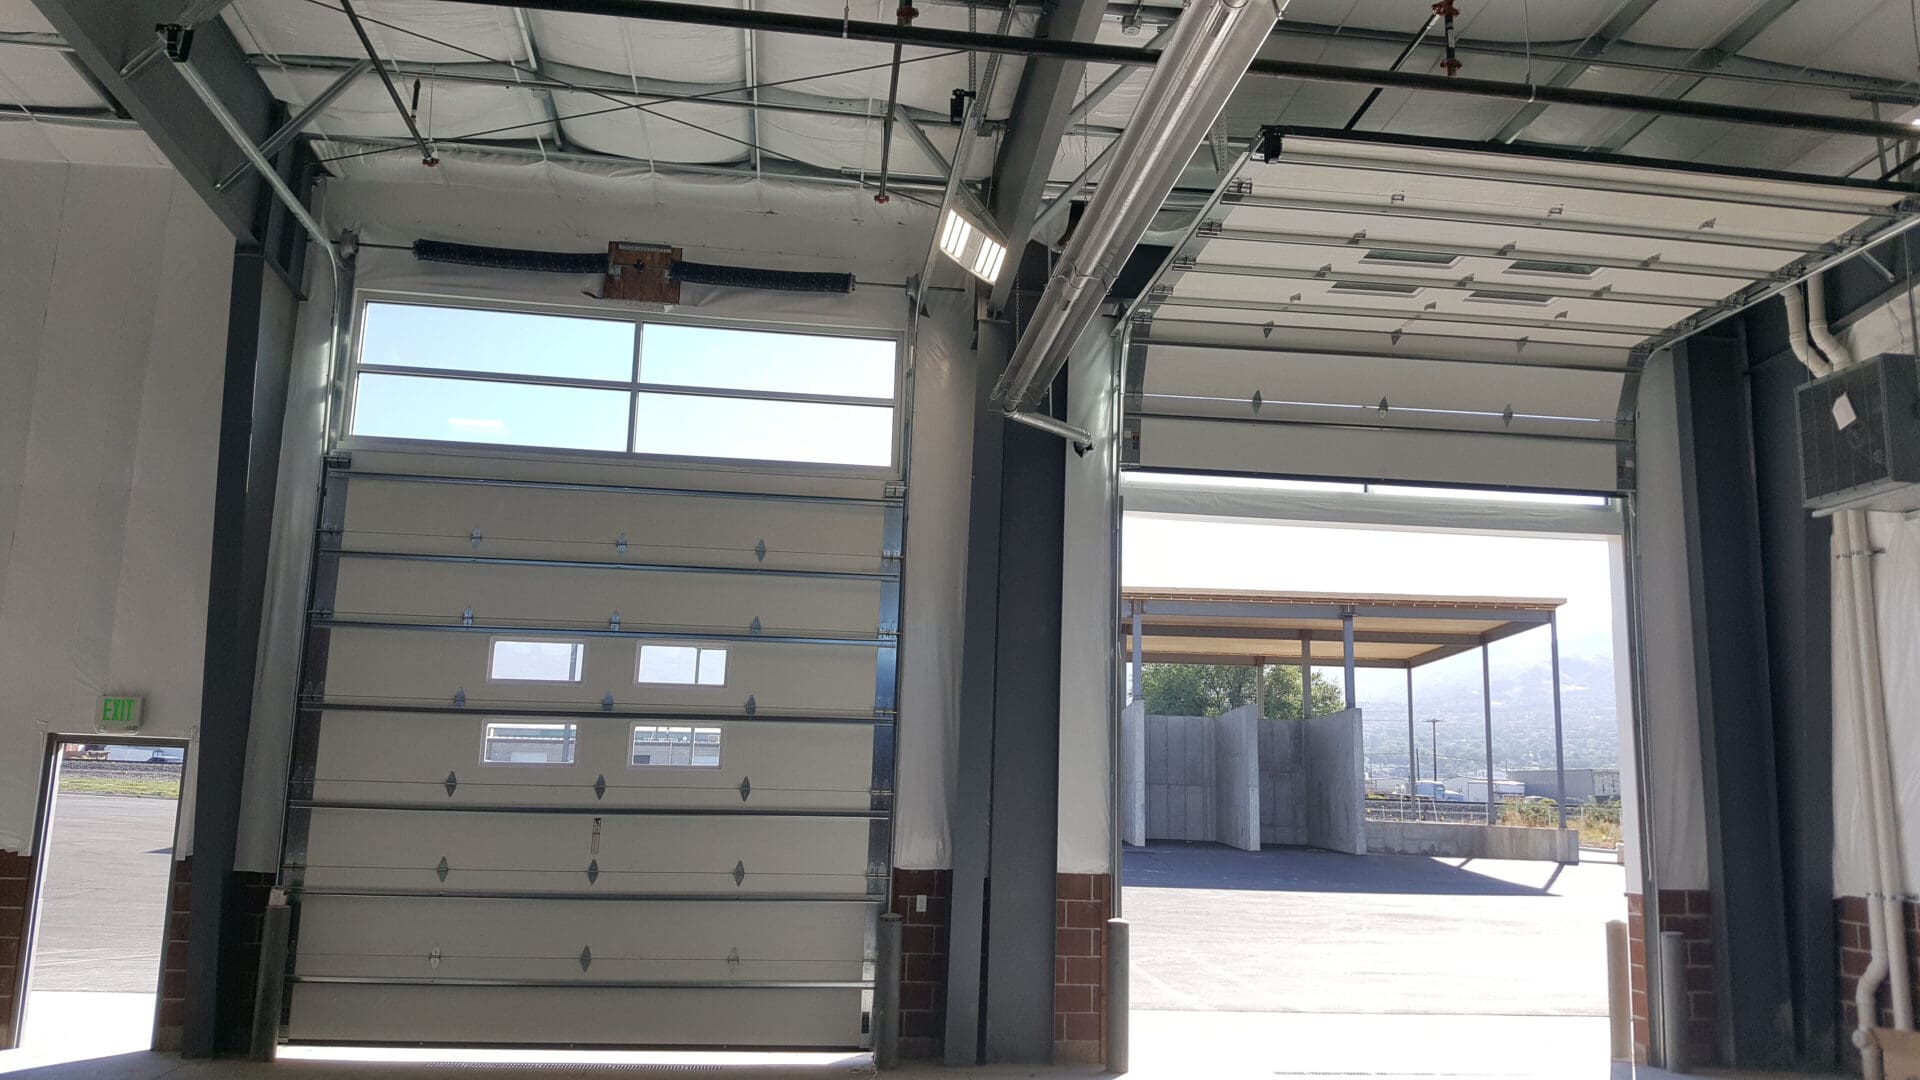 Beacon Garage Doors commercial garage door repair in Bountiful, Utah, with multiple doors open.